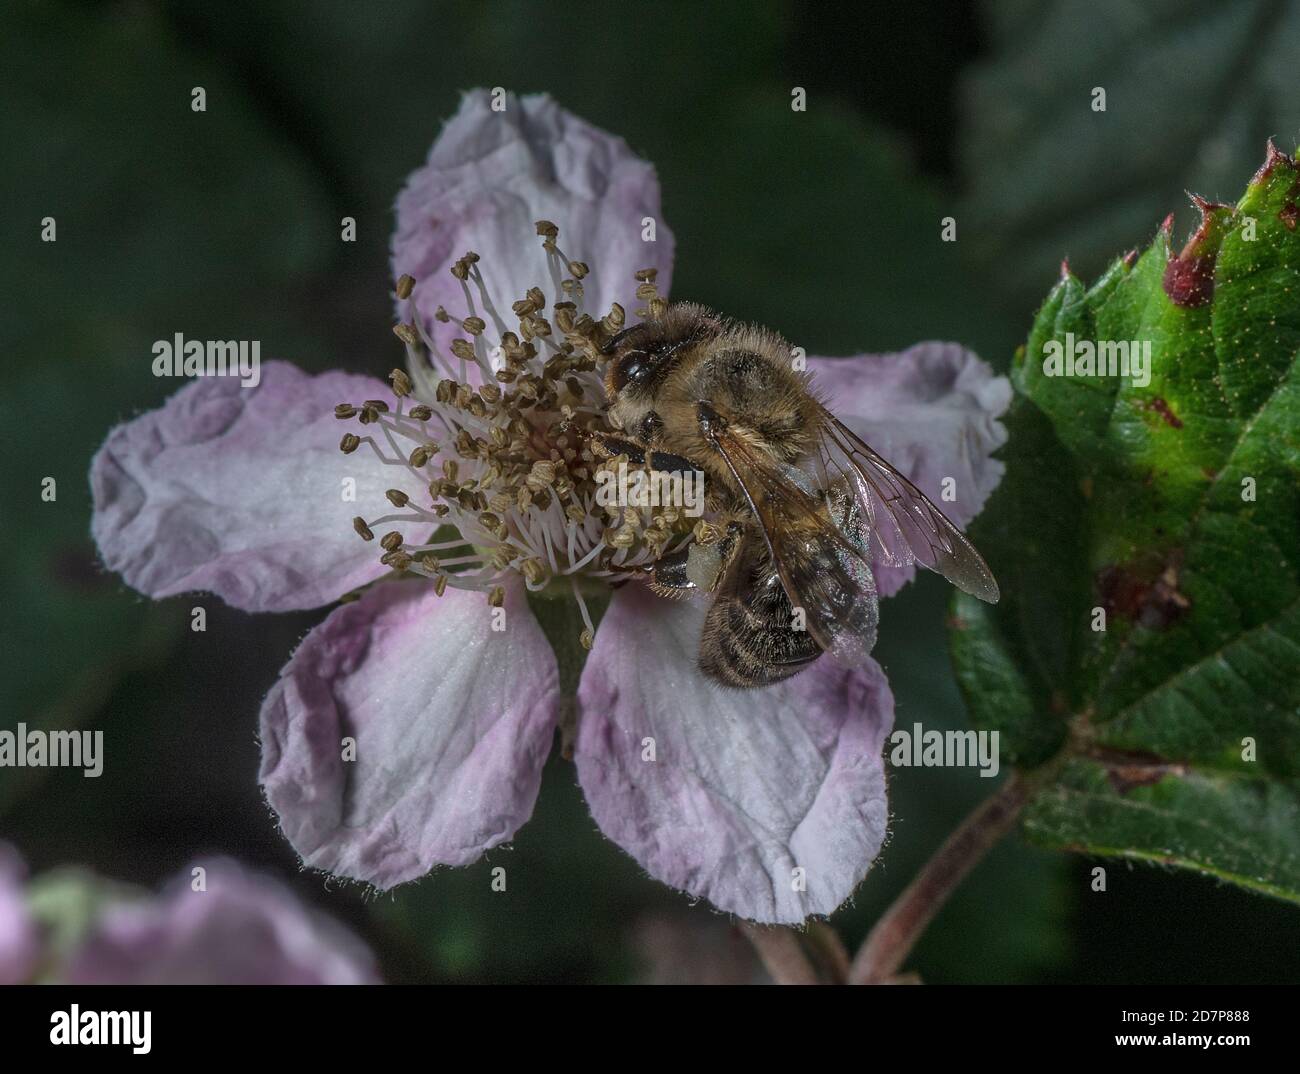 Abeille noire européenne, APIS mellifera mellifera, une sous-espèce d'abeille occidentale, se nourrissant de la fleur rose de Bramble. Nouvelle forêt. Banque D'Images